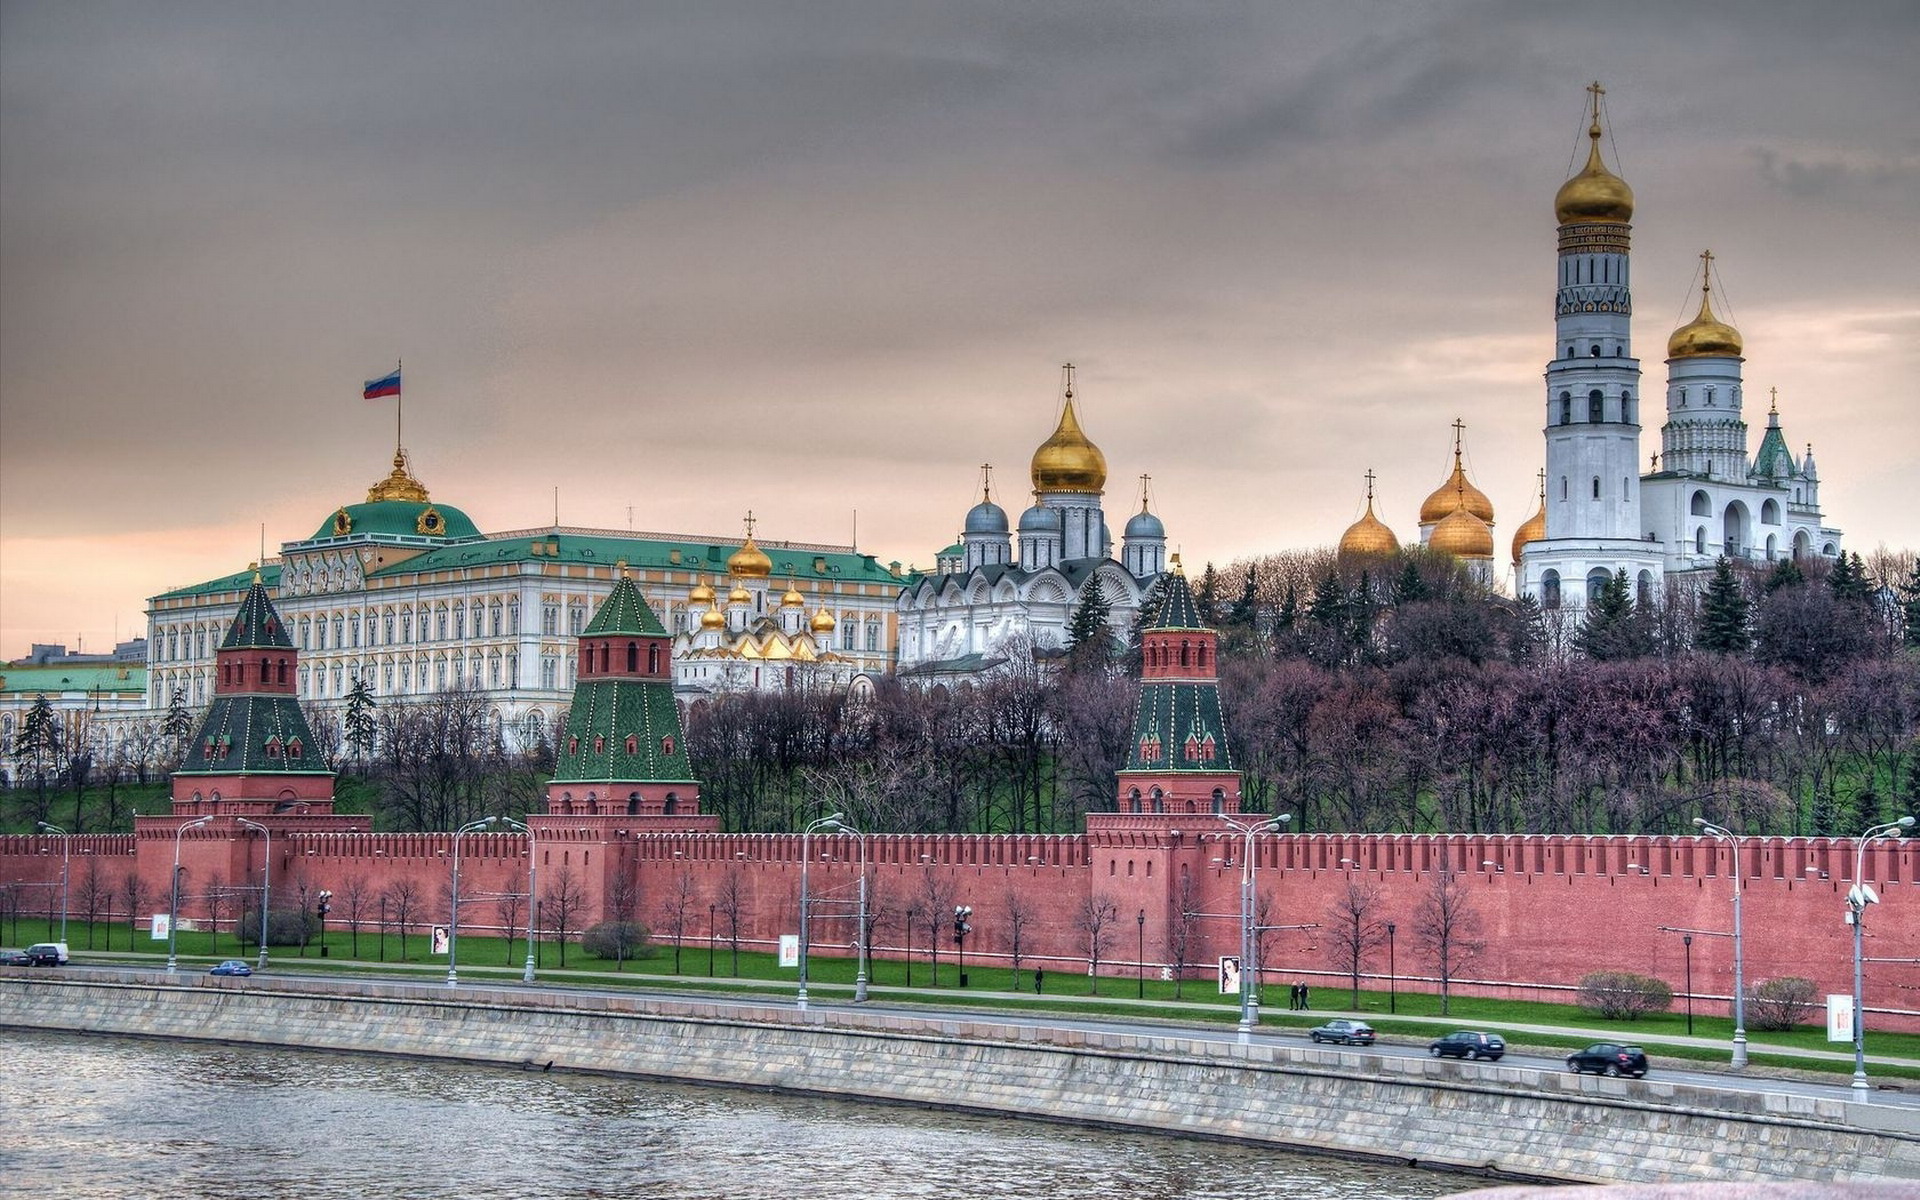 High Resolution Wallpaper | Moscow Kremlin 1920x1200 px